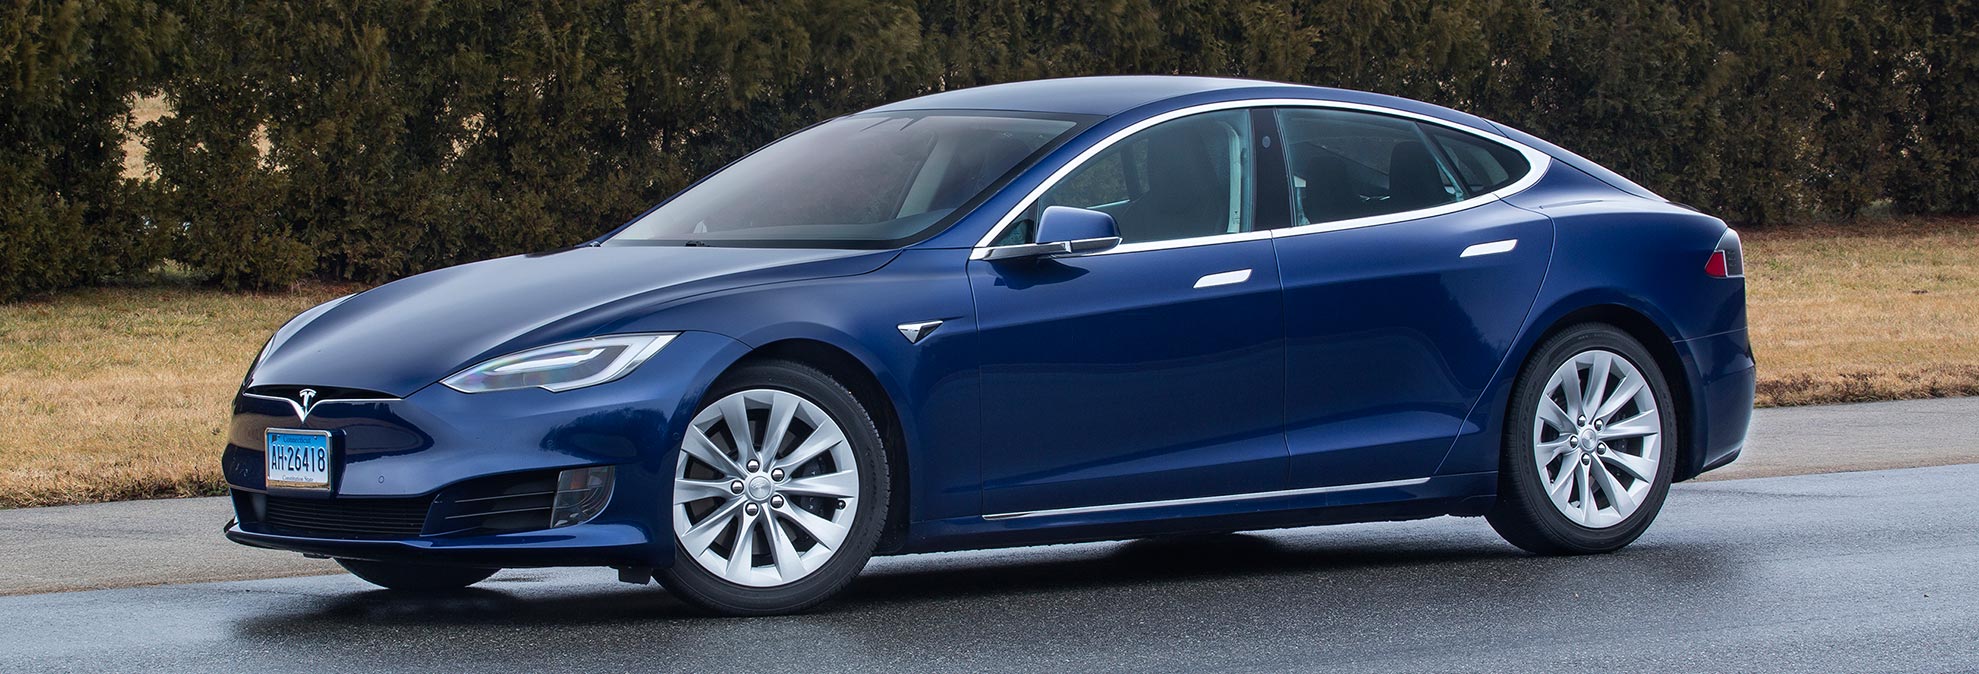 Tesla’nın gizli test aracı yeni bir Model S versiyonu olabilir